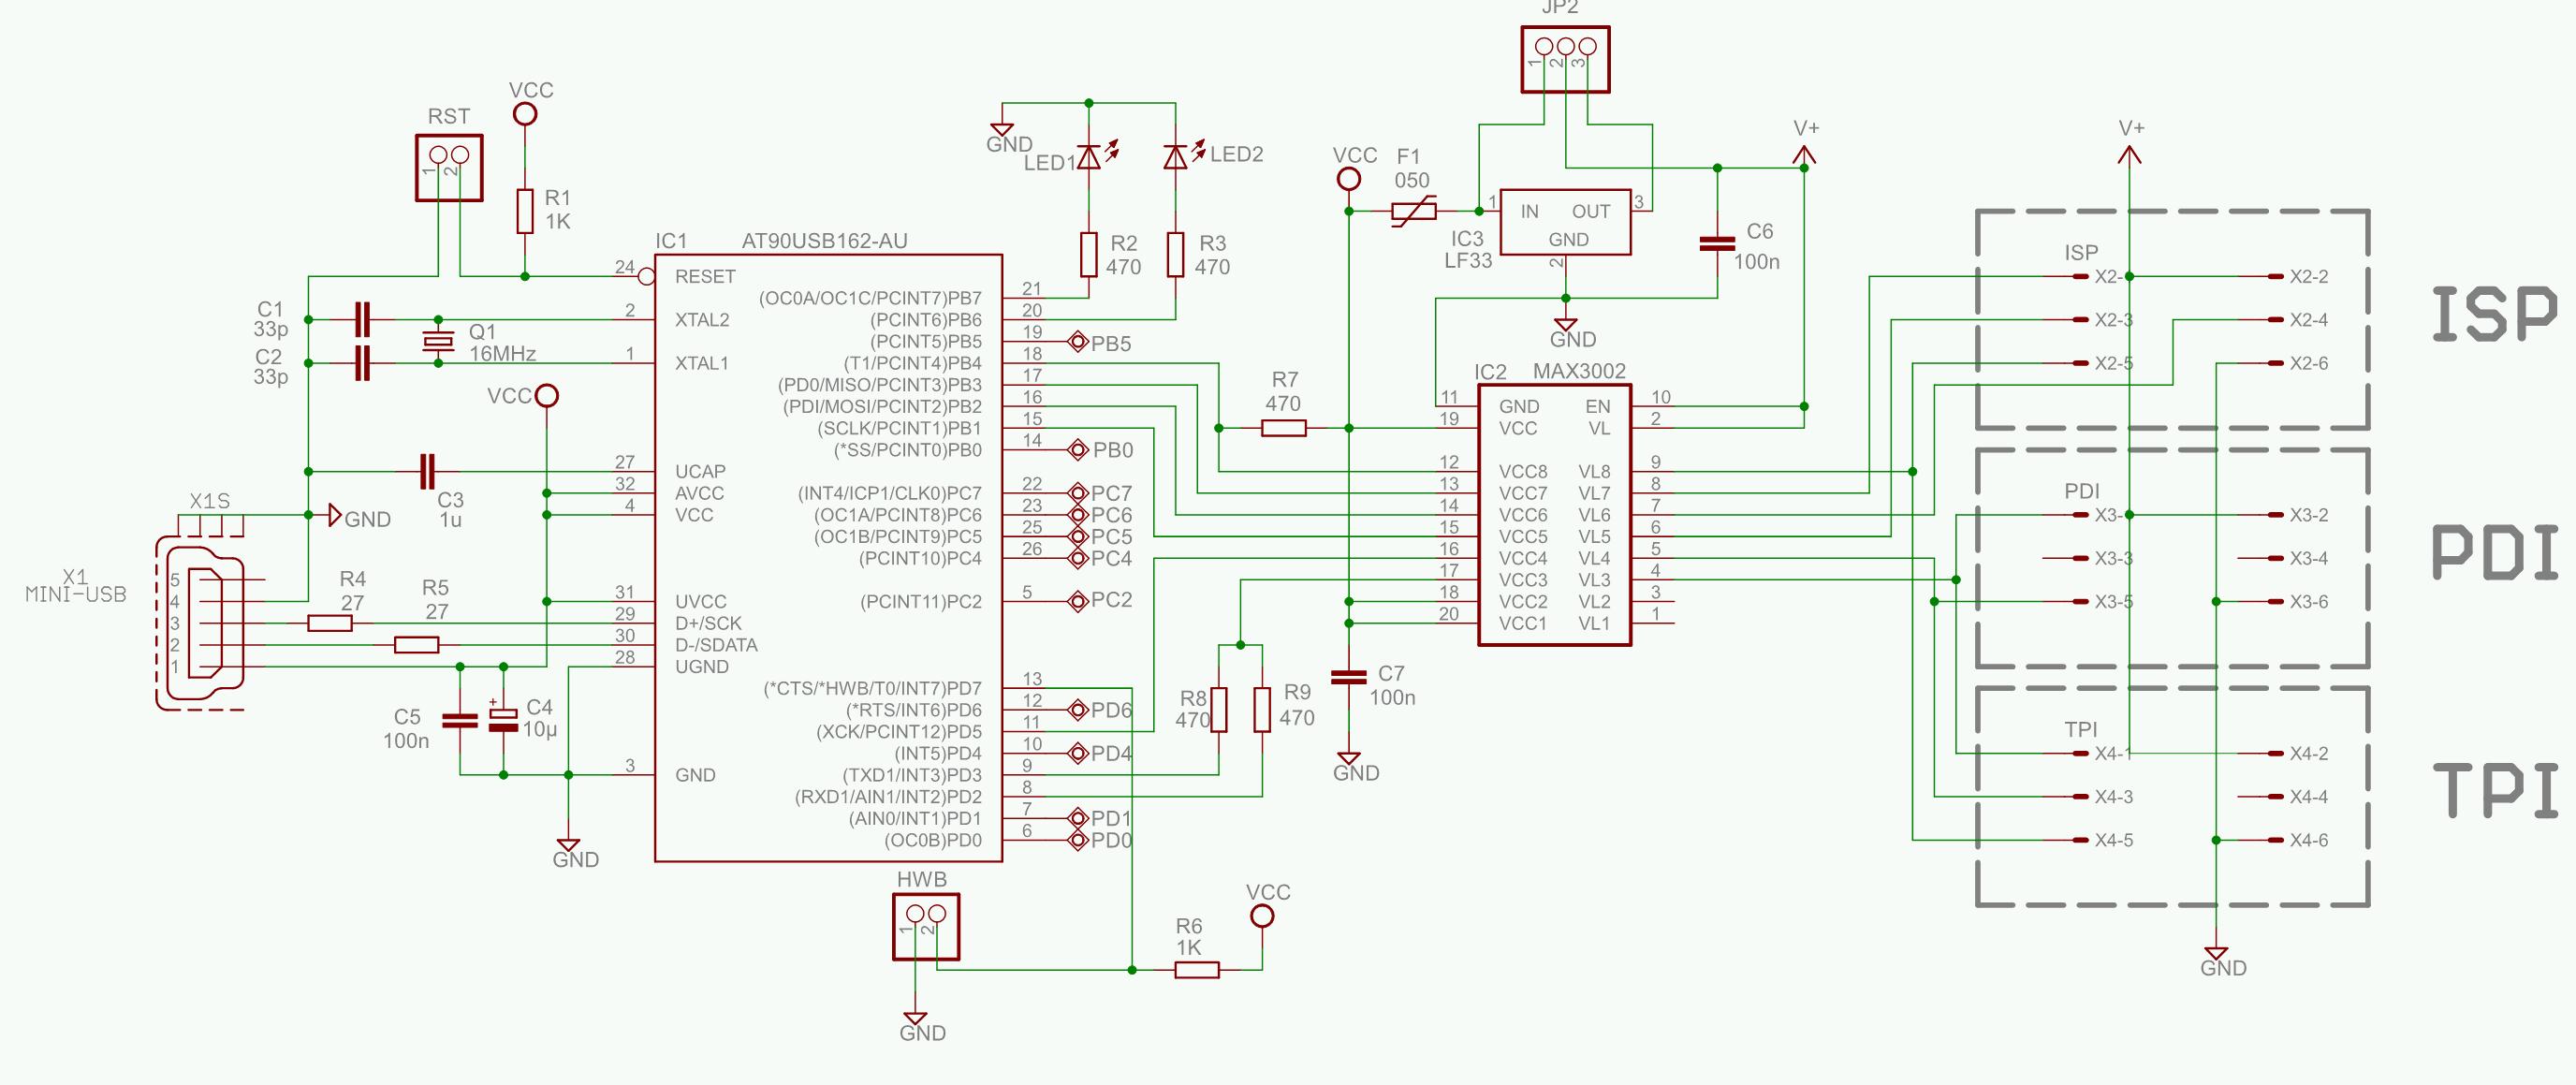 Миниатюрный программатор USBTiny-MkII SLIM - схема